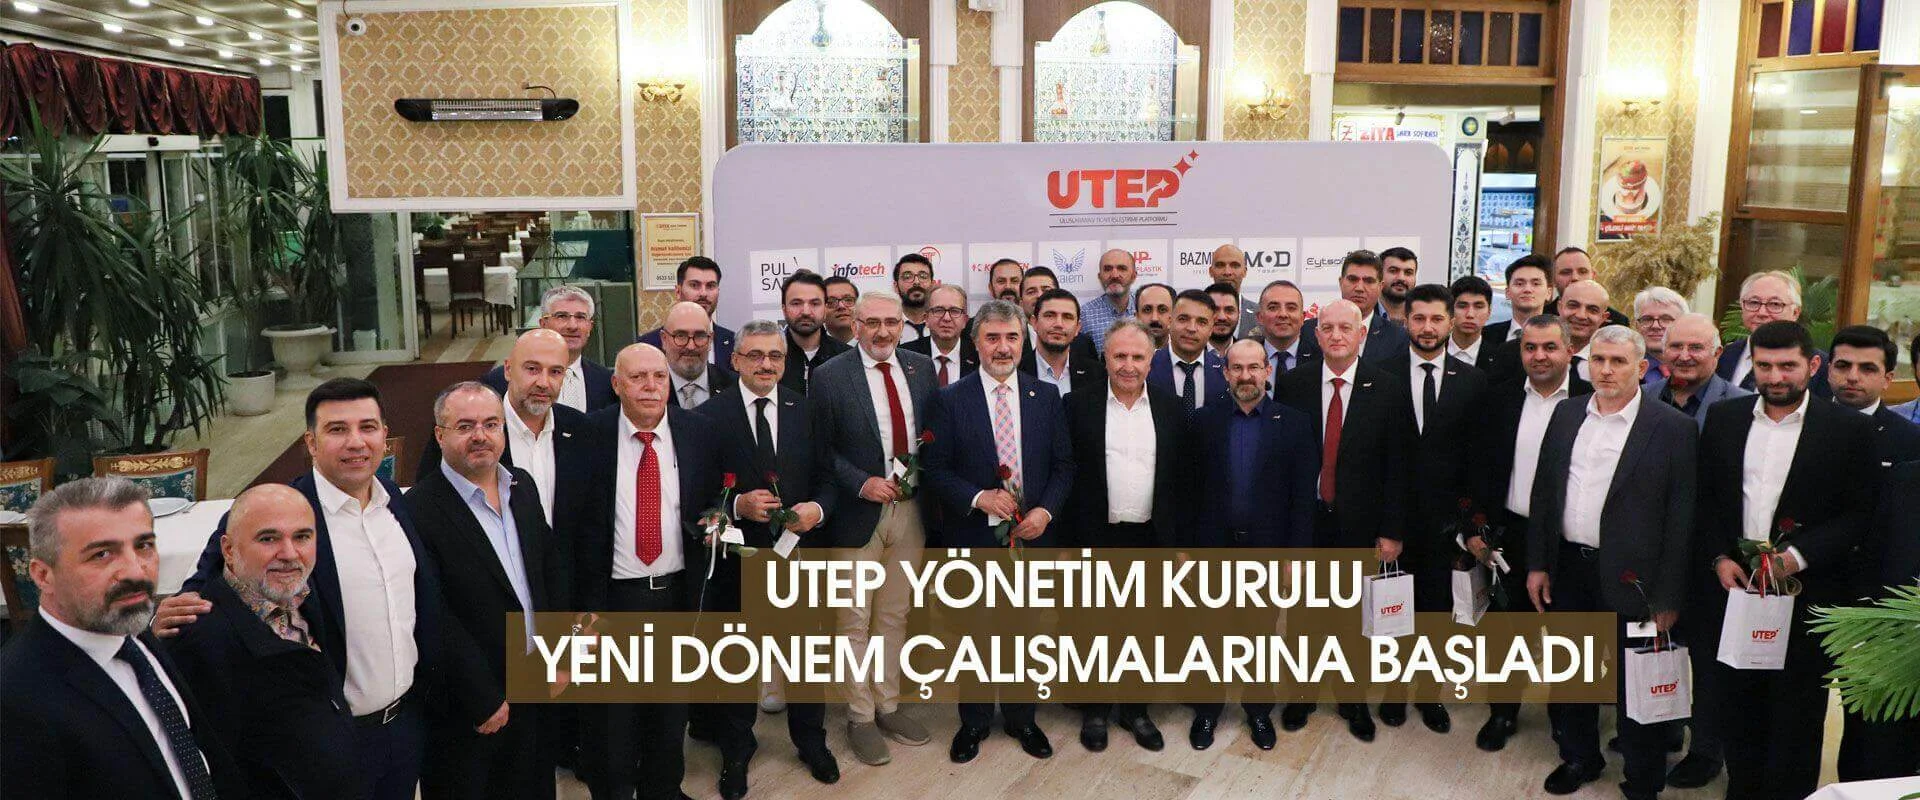 UTEP Yönetim Kurulu Yeni Dönem Çalışmalarına Başladı